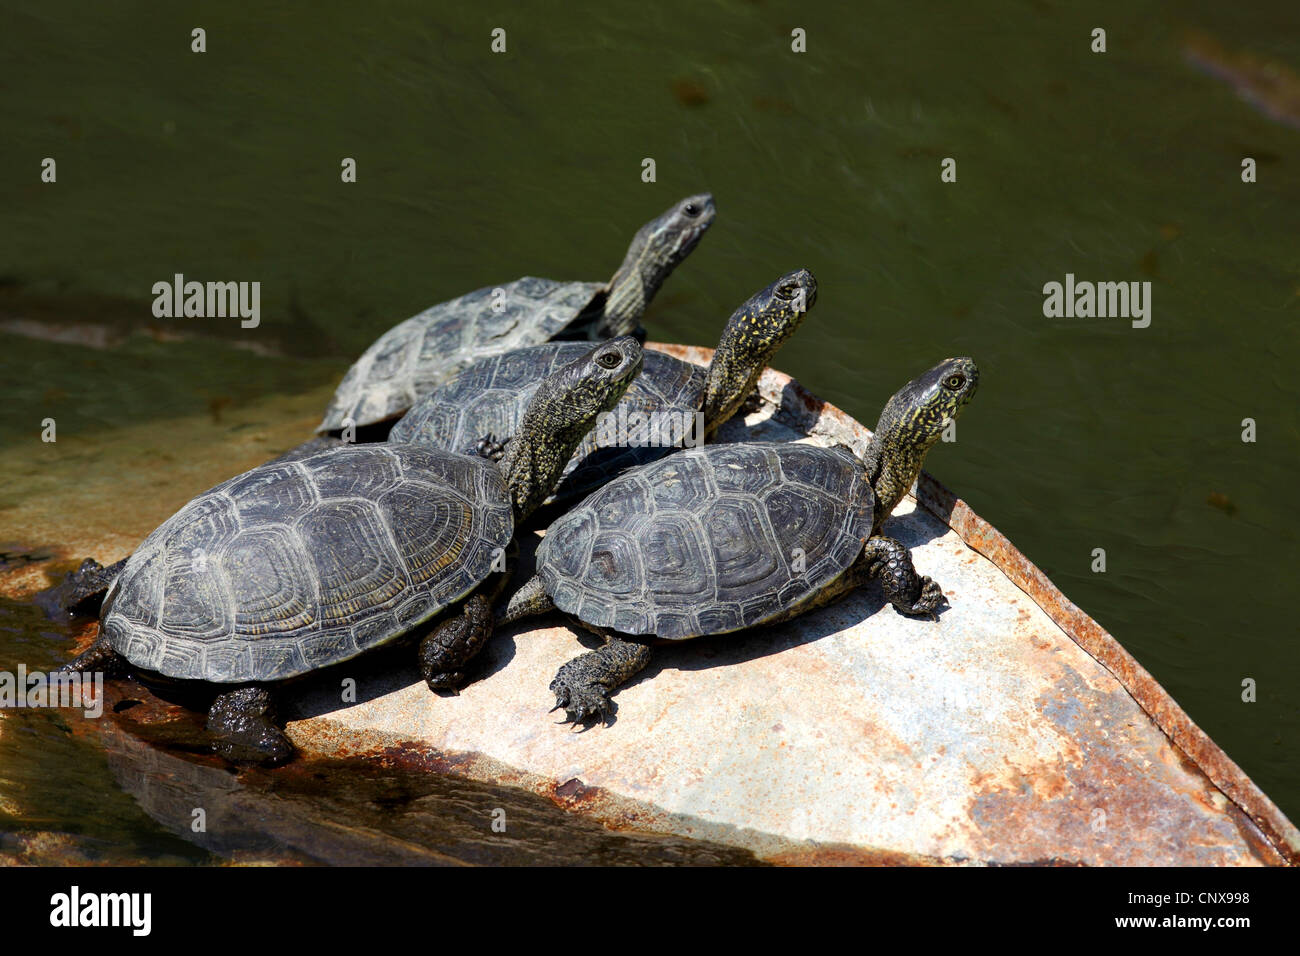 Étang d'Europe, tortue tortue de l'étang d'Europe, Emys orbicularis (tortue), groupe sur un front de mer, Grèce, Lesbos Banque D'Images